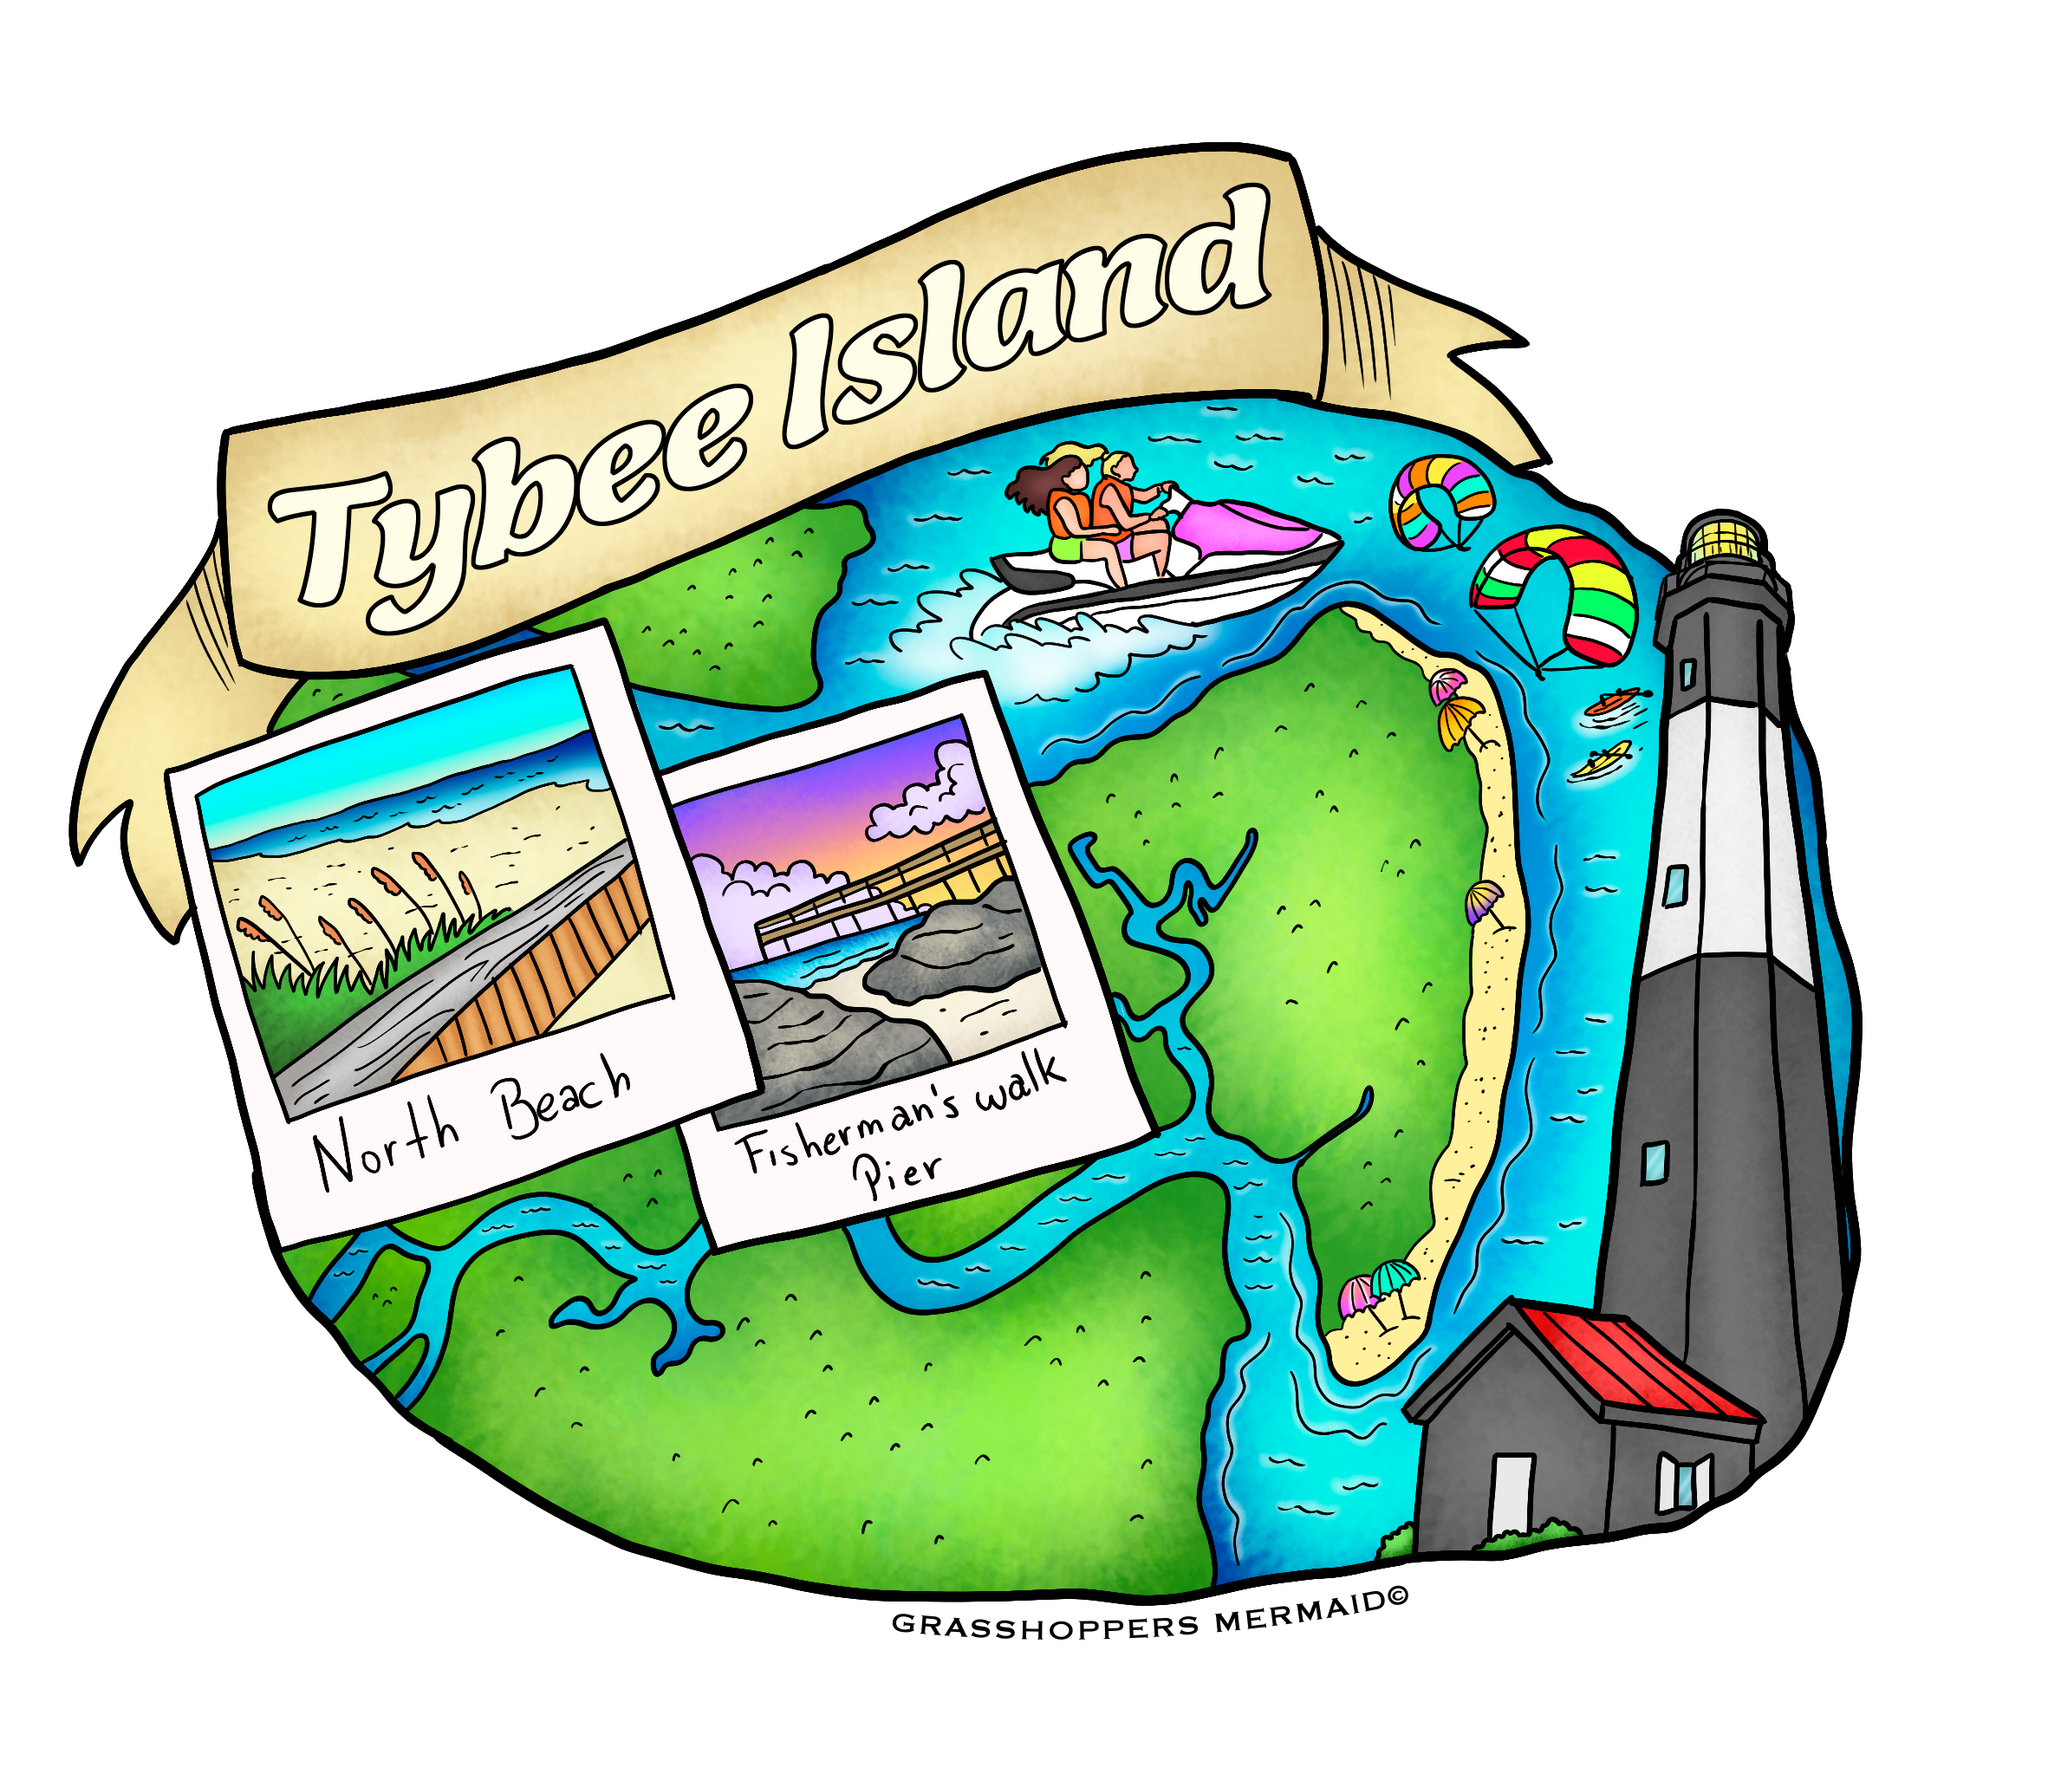 Tybee Island Map